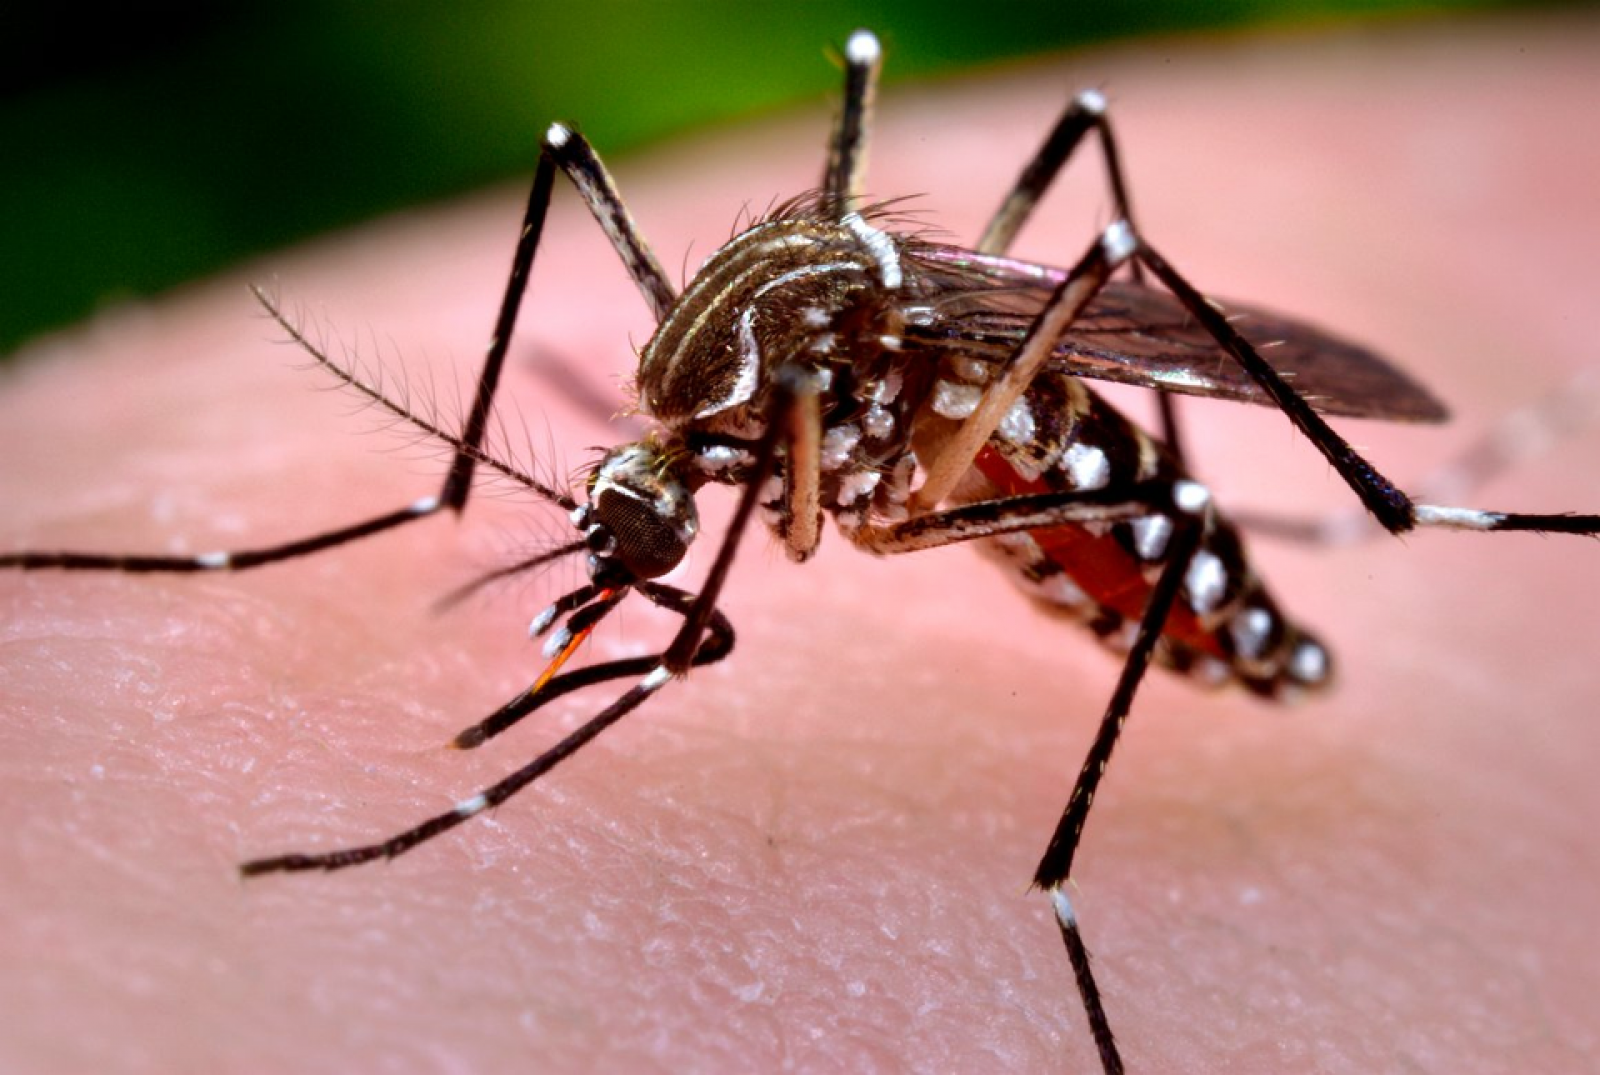 Você sabe diferenciar os sintomas da gripe, dengue, zika e chikungunya?